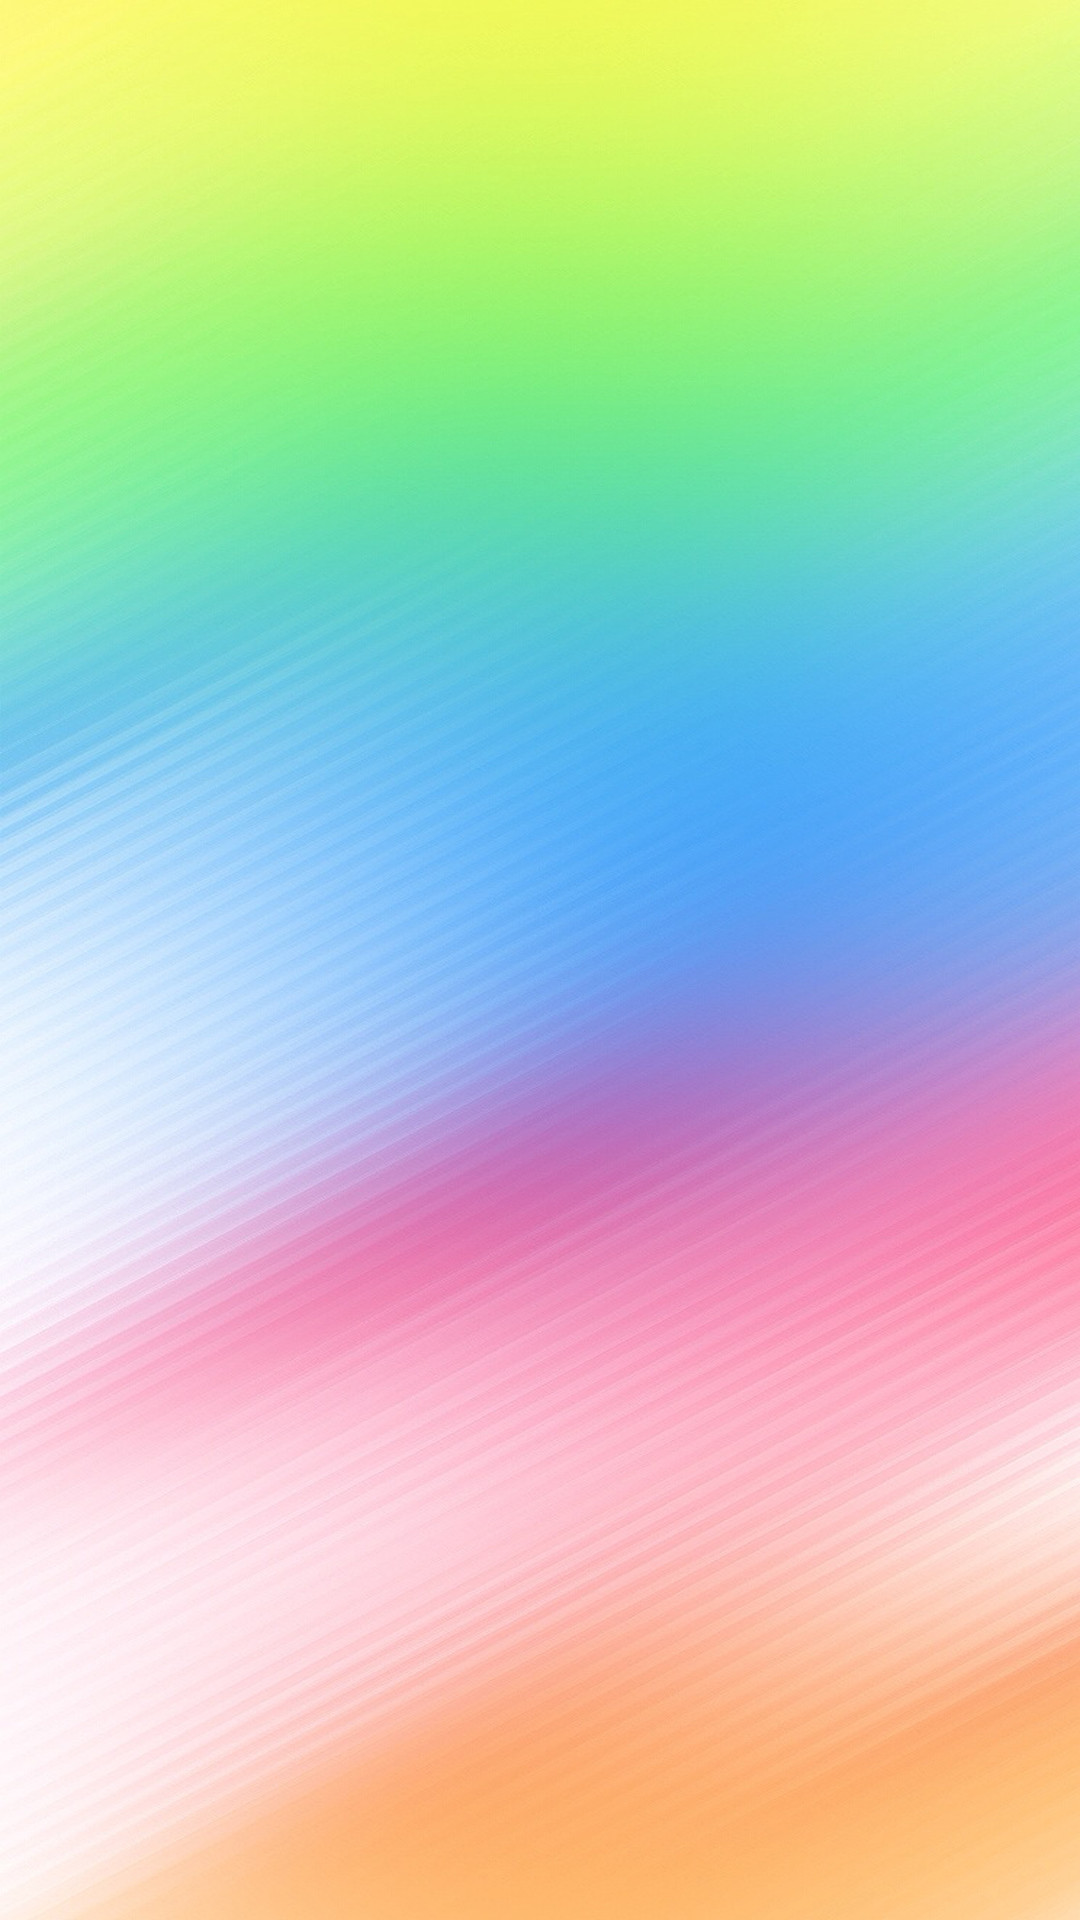 スマホ壁紙 パステルカラーの虹色グラデーション Iphone Wallpapers